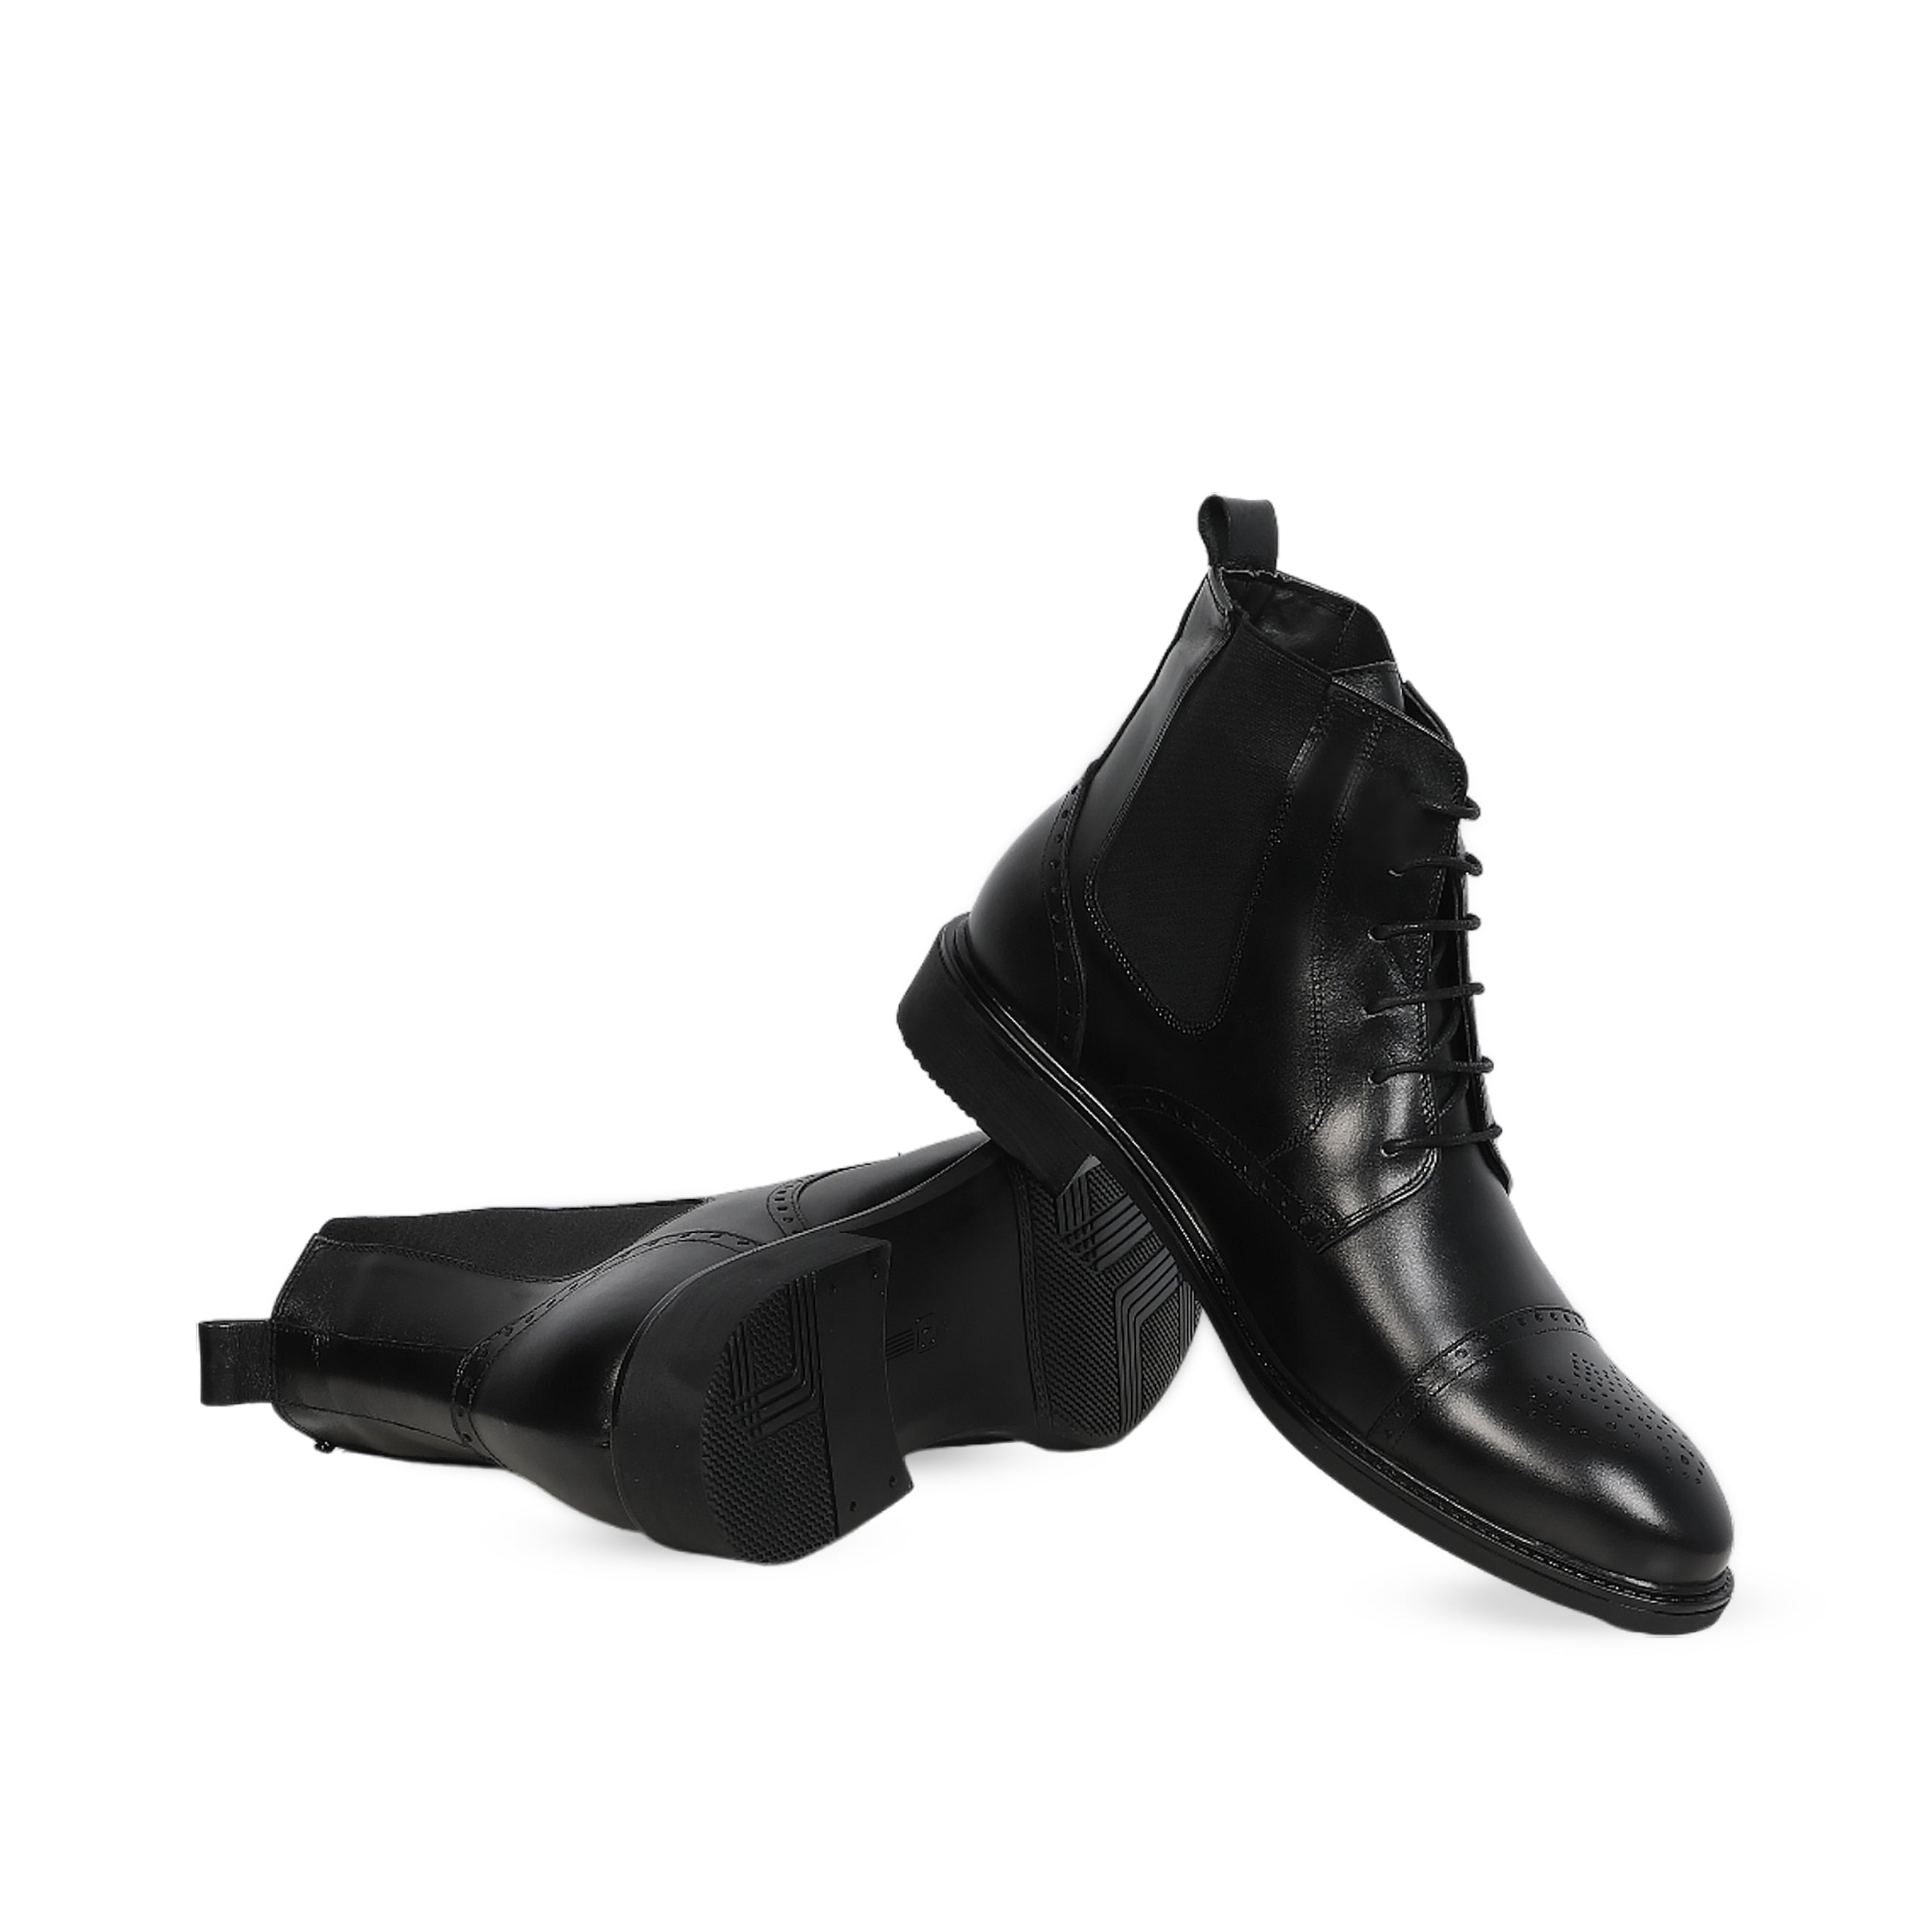 Moustache's High-End Designed Black Boots